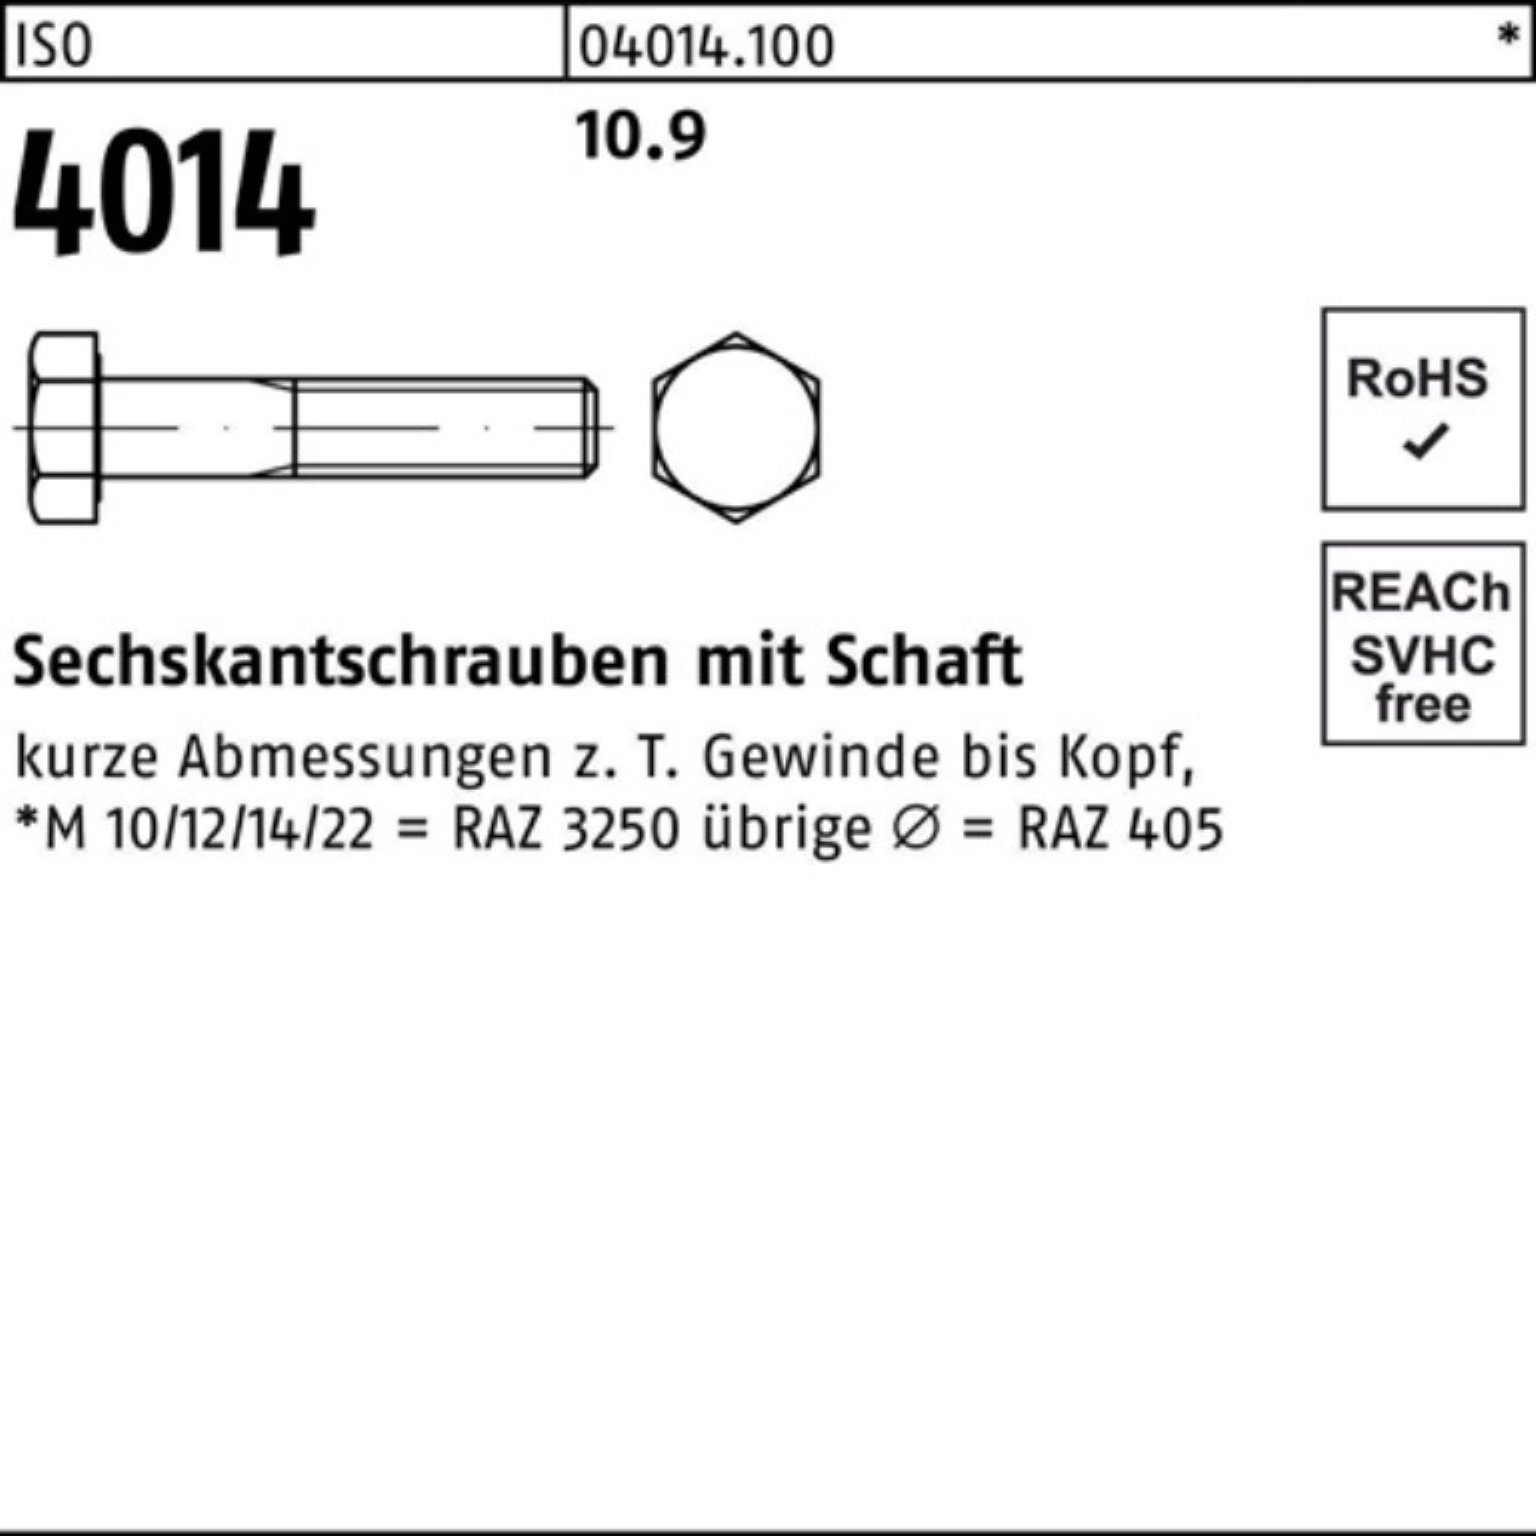 Sechskantschraube Bufab 4014 Sechskantschraube I 100er 25 Schaft ISO 10.9 Stück 110 Pack M18x